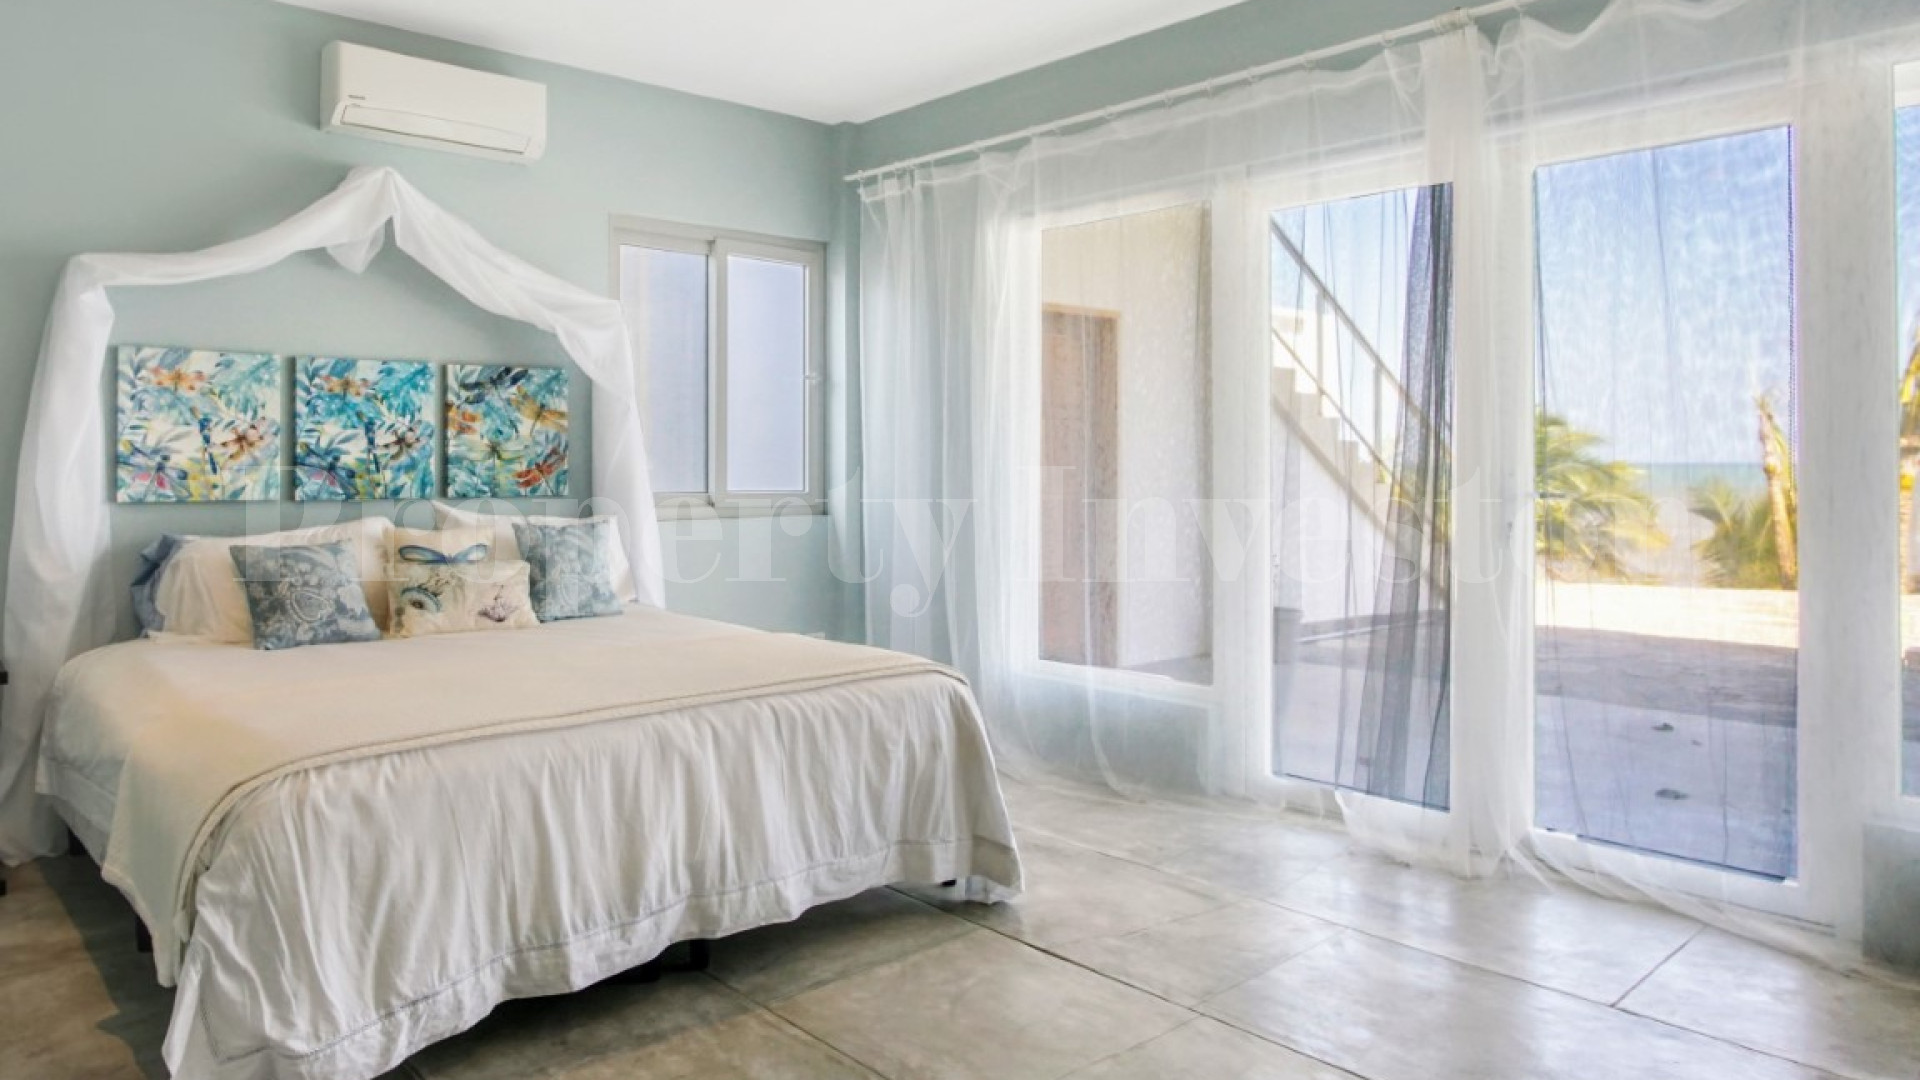 Потрясающая роскошная вилла на 6 спален у моря с восхитительными панорамными видами на Тихий океан в Педаси, Панама